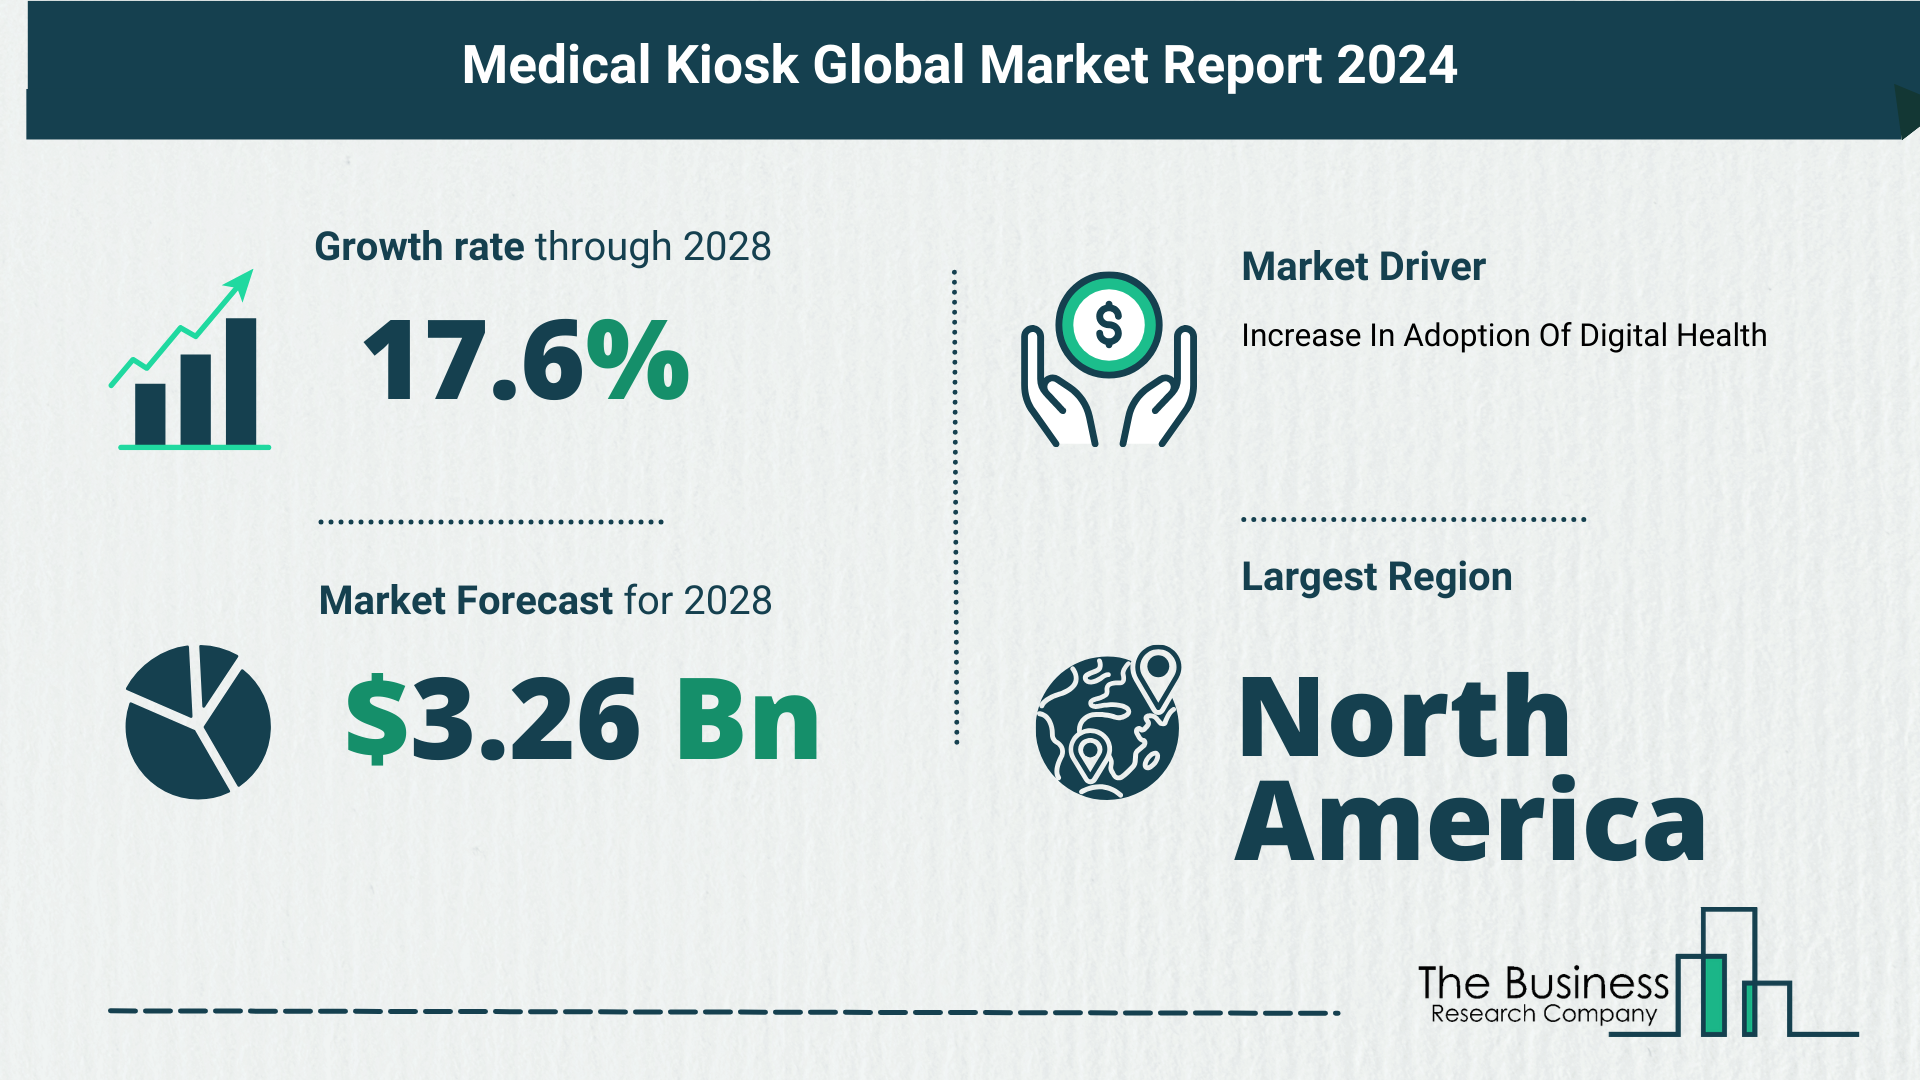 Global Medical Kiosk Market